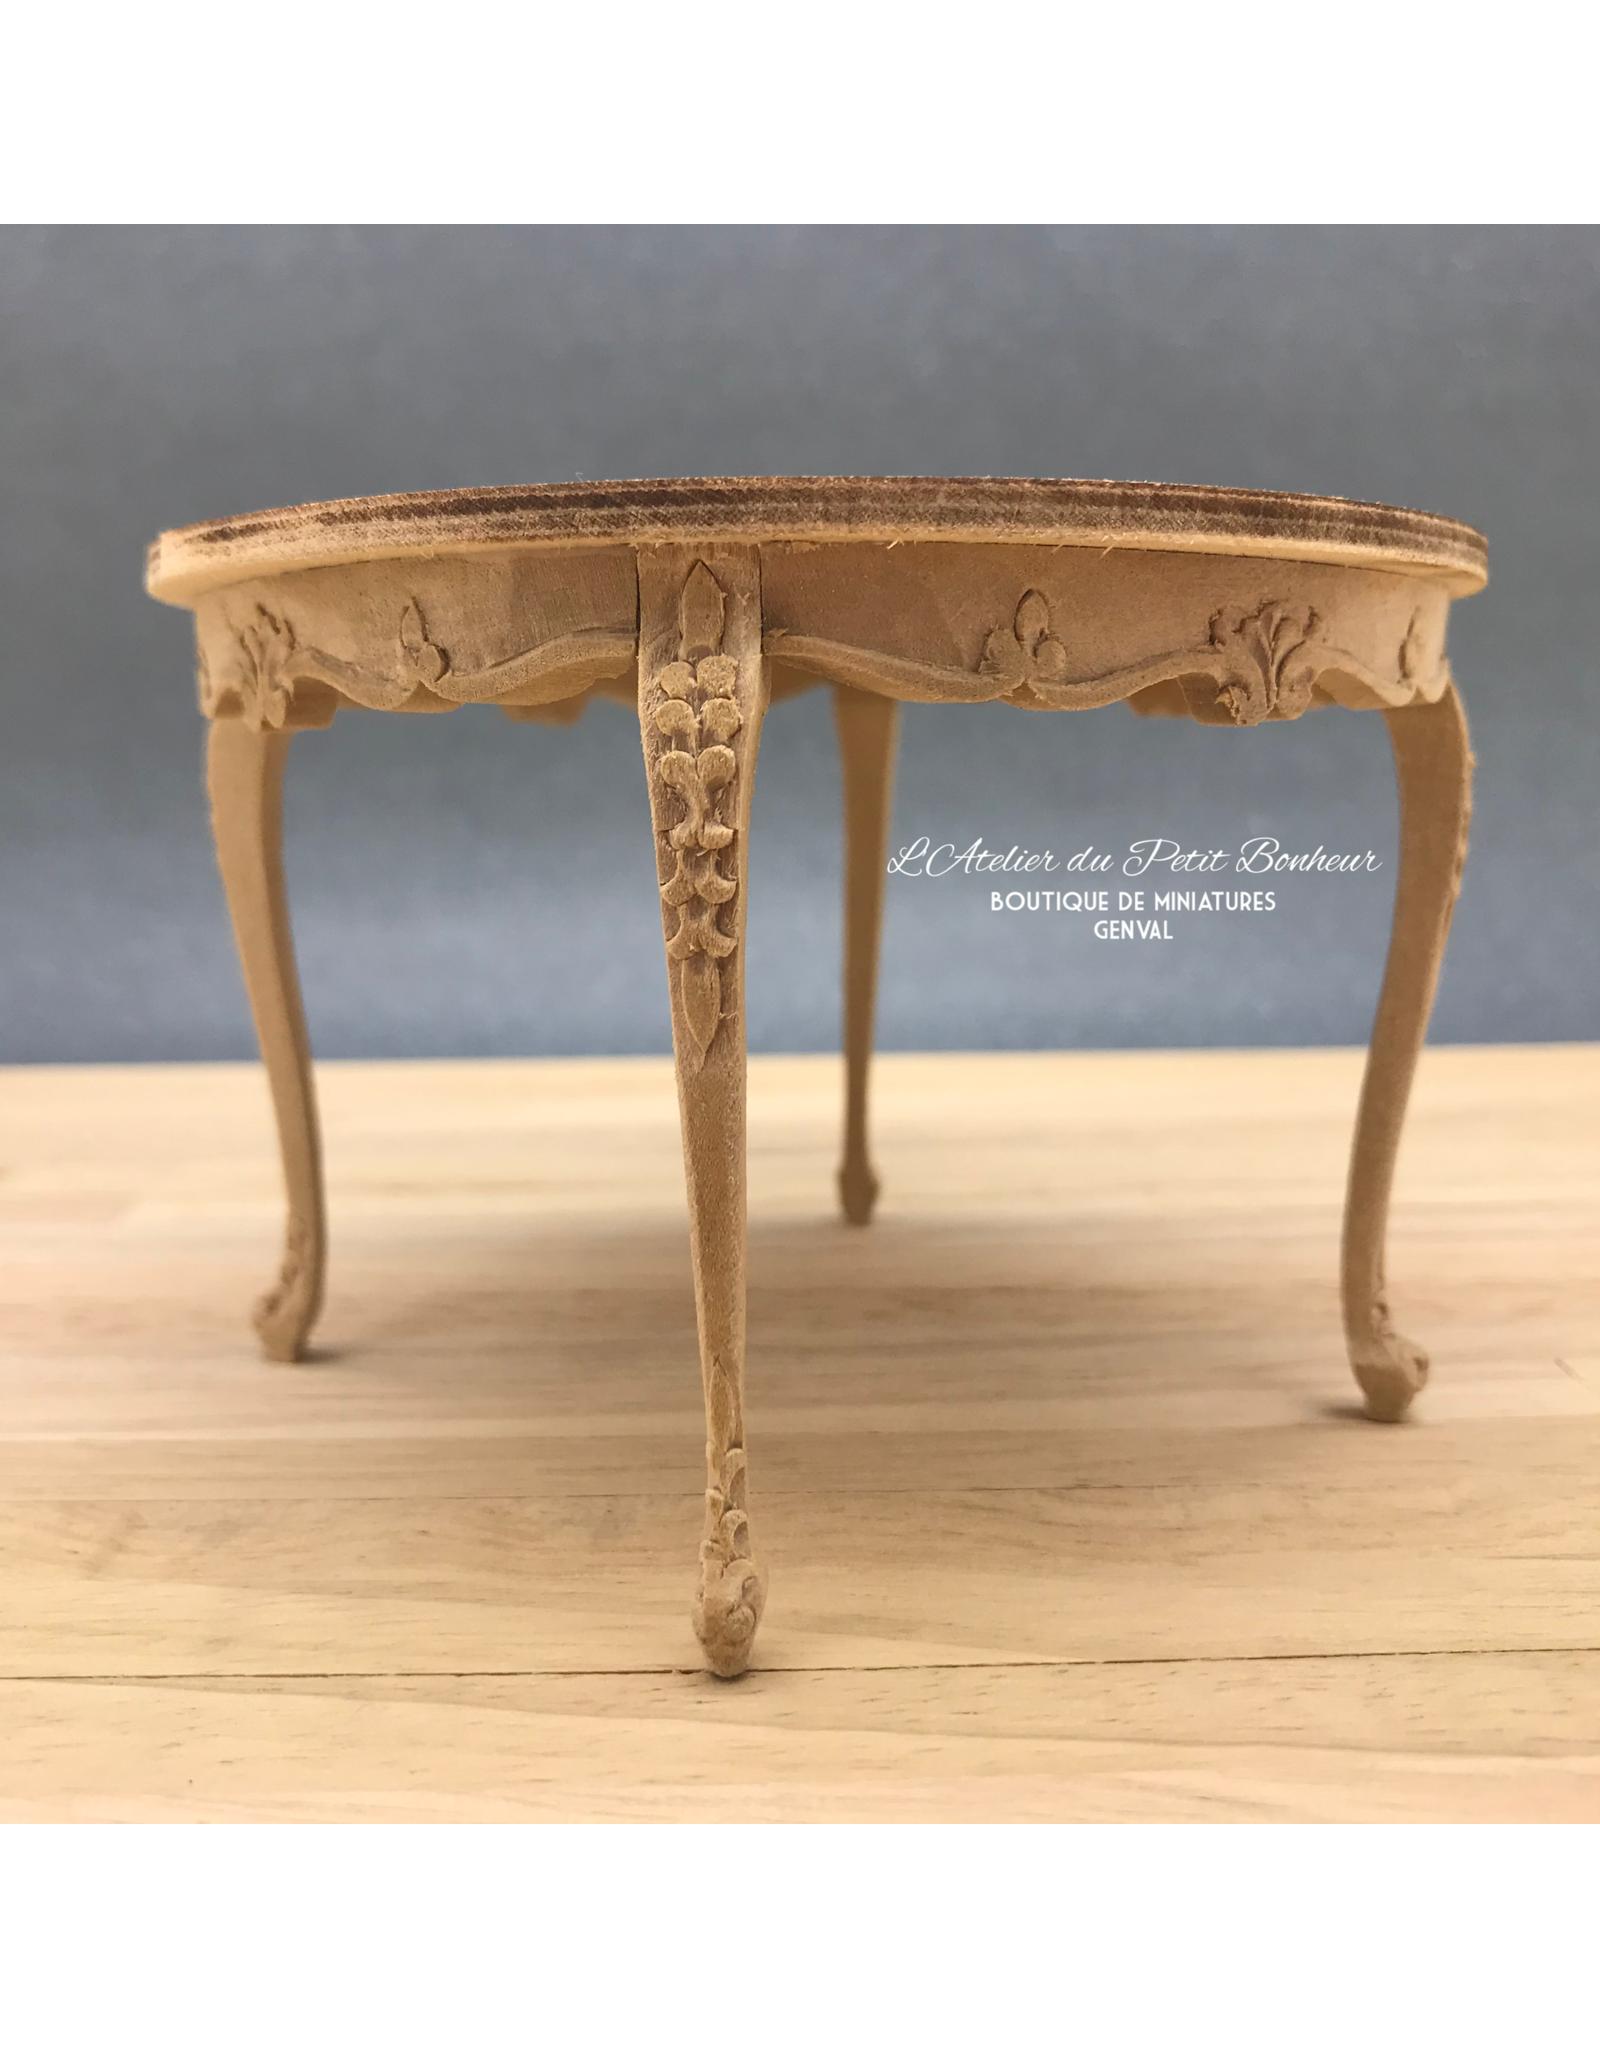 Table ronde sculptée miniature 1:12